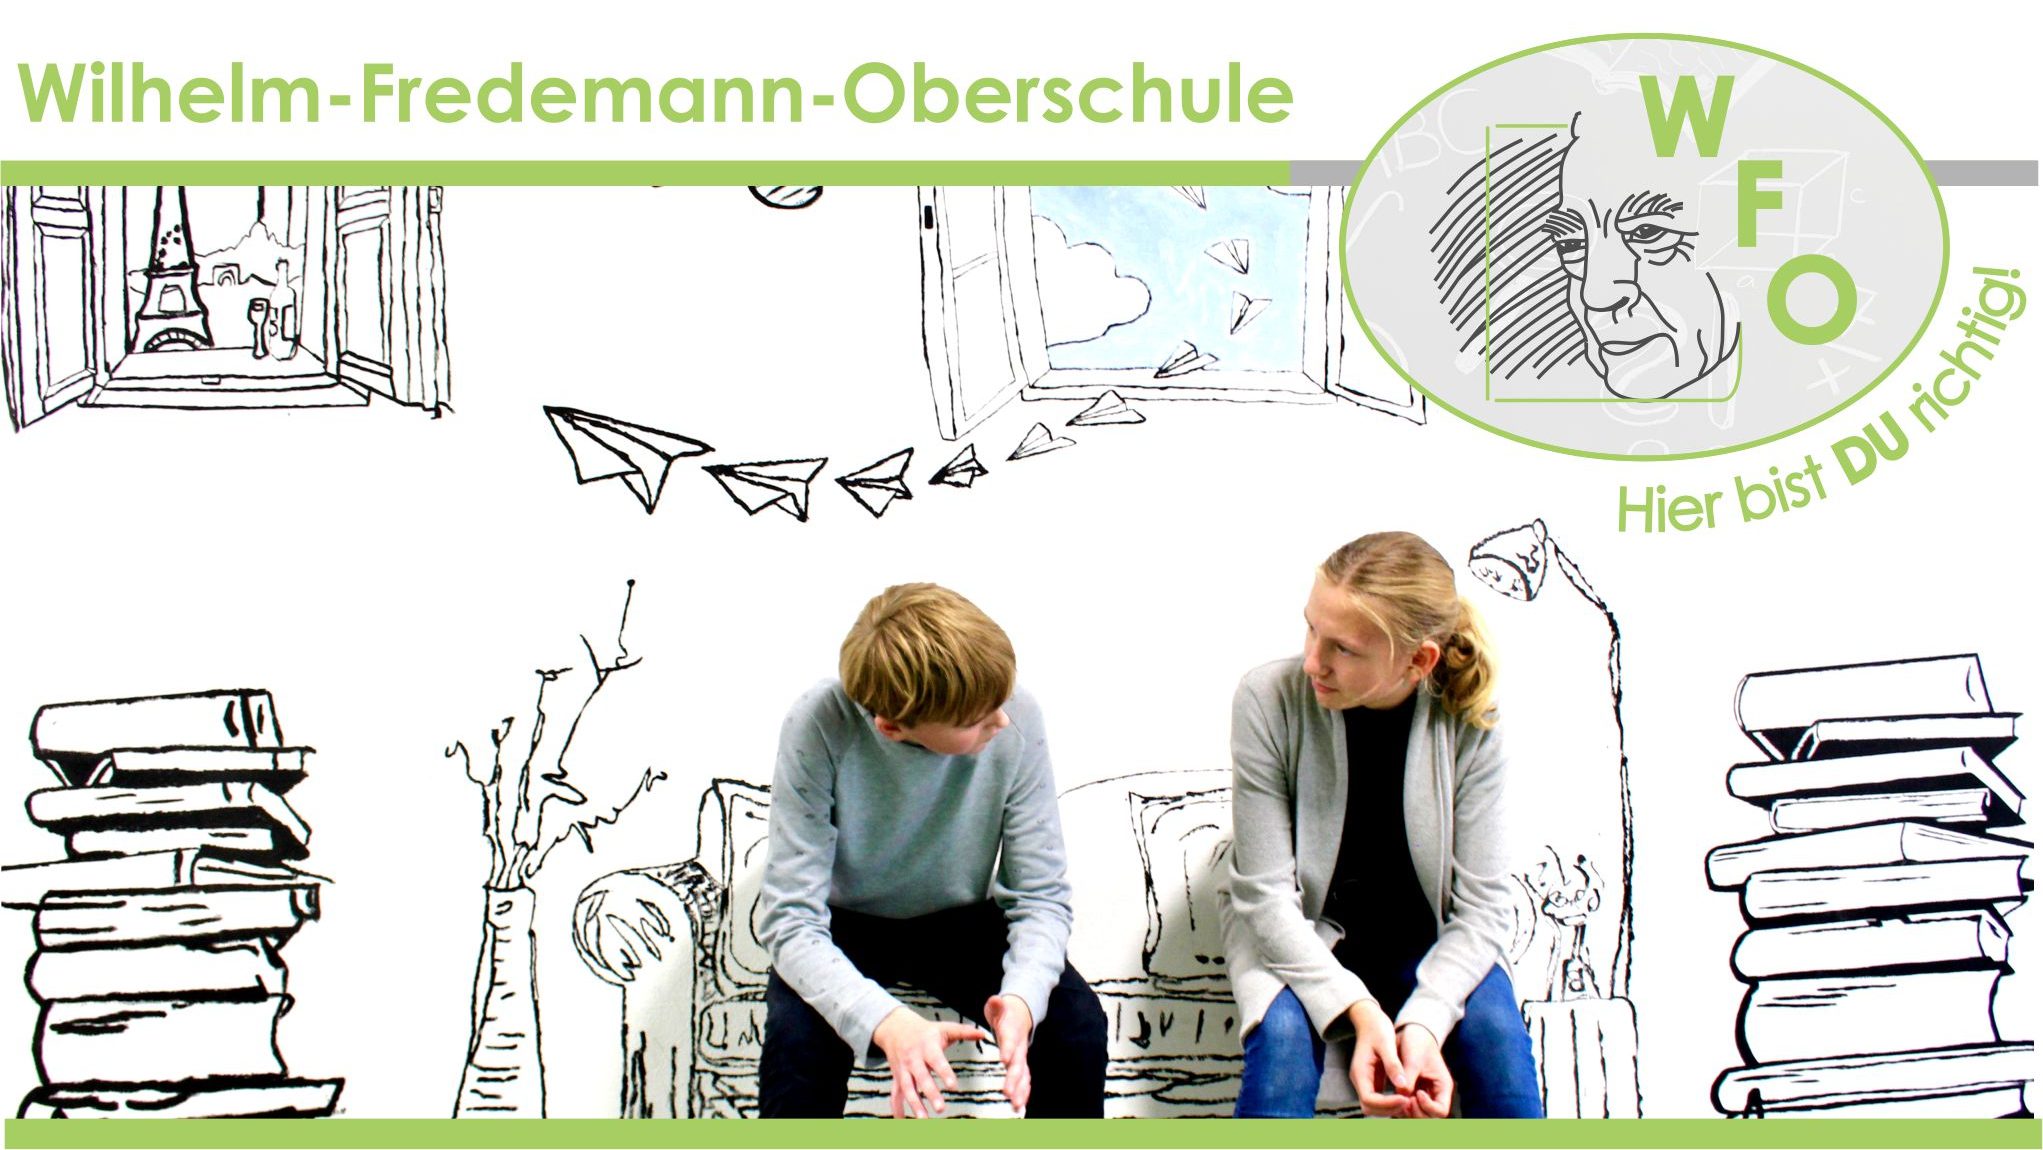 Wilhelm-Fredemann-Oberschule